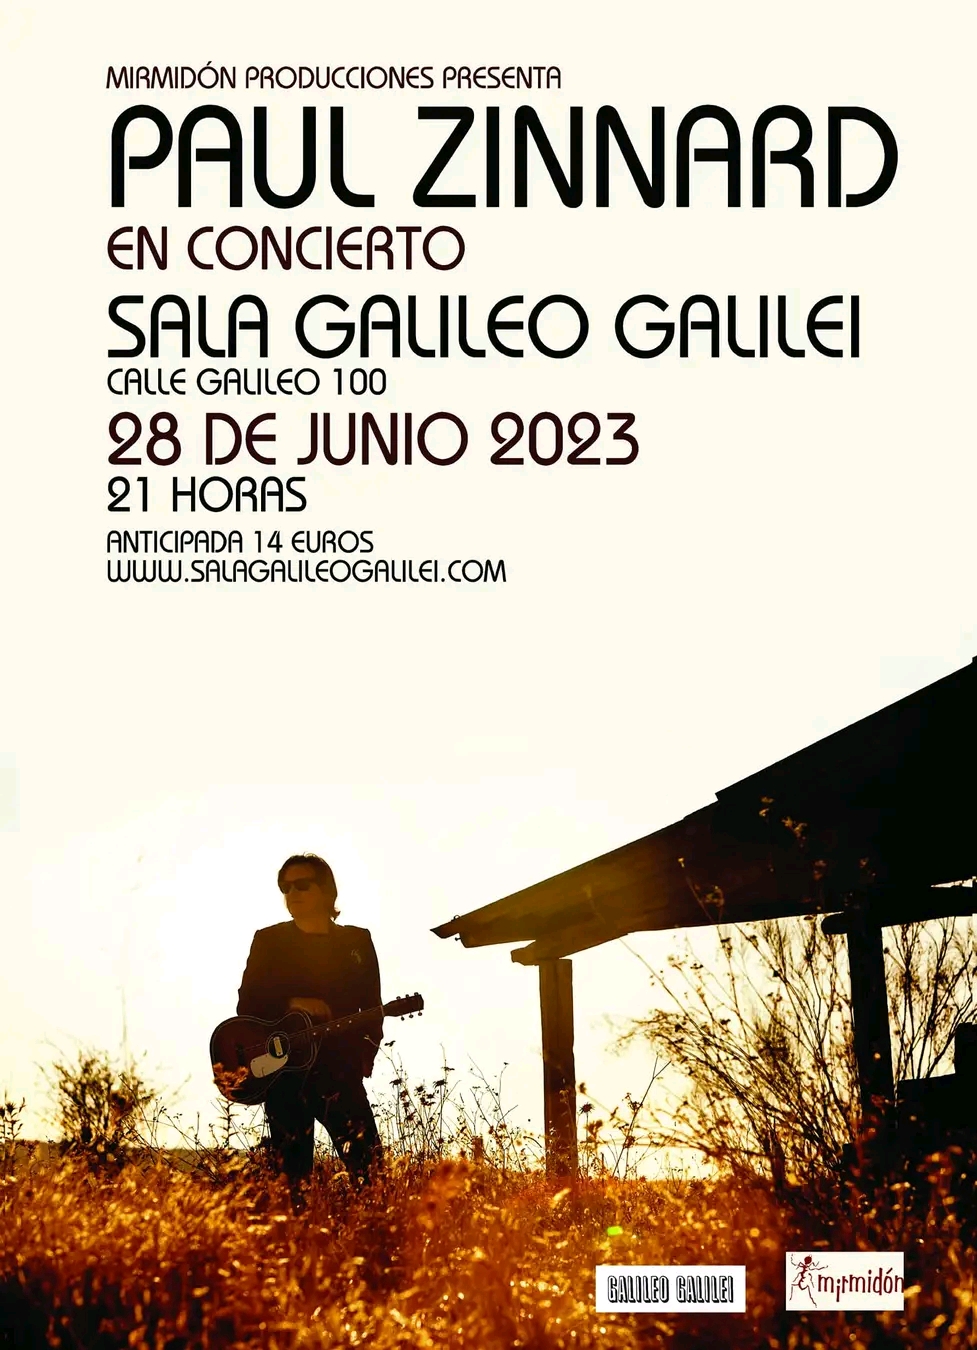 PAUL ZINNARD, presenta disco en MADRID